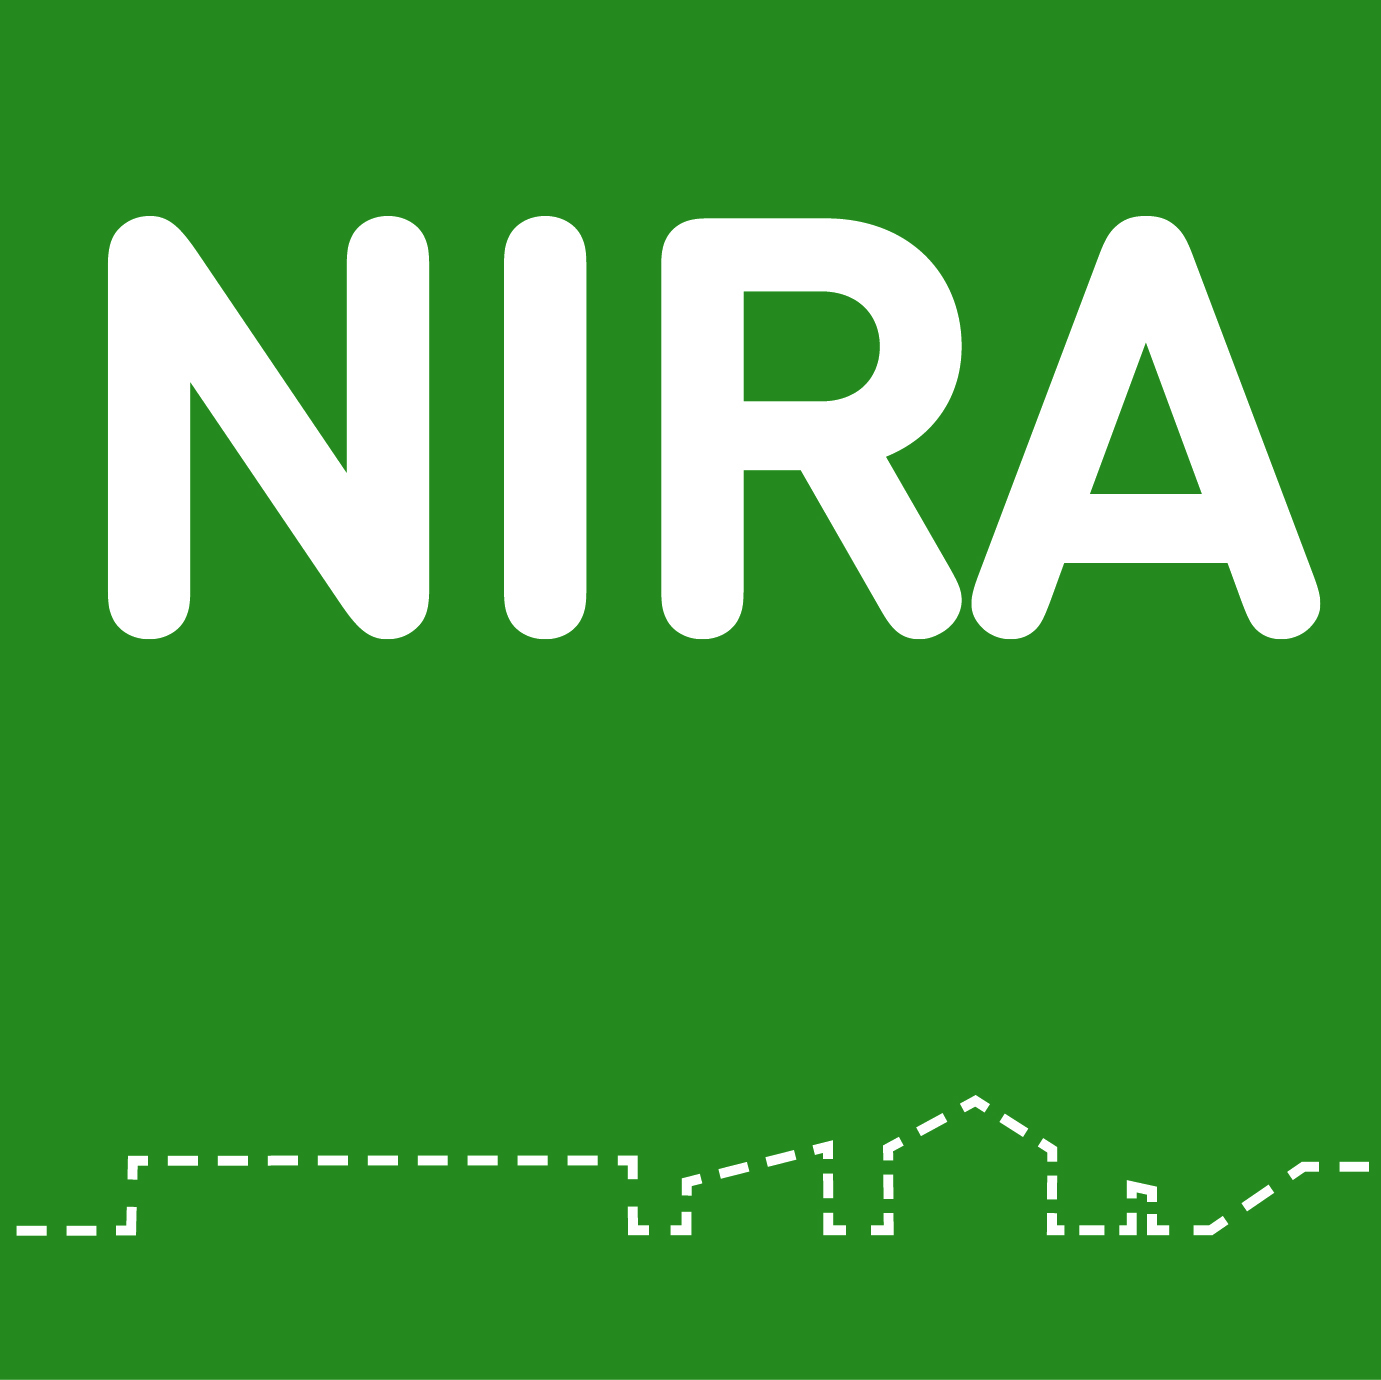 NIRA Logo